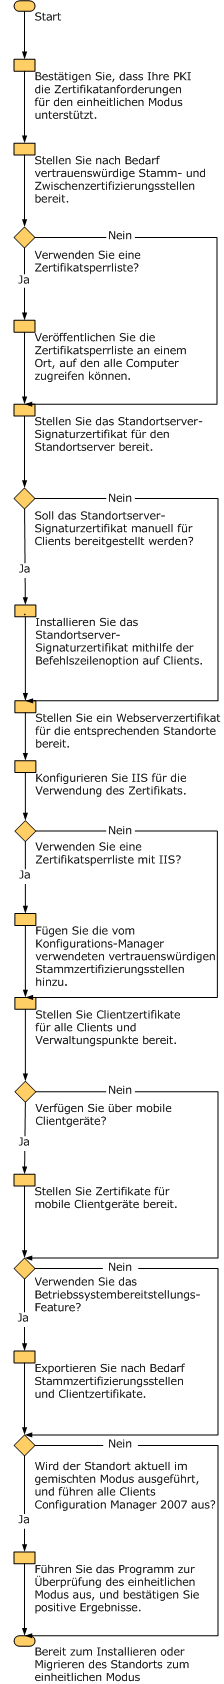 Administratorworkflow der Bereitstellung von PKI